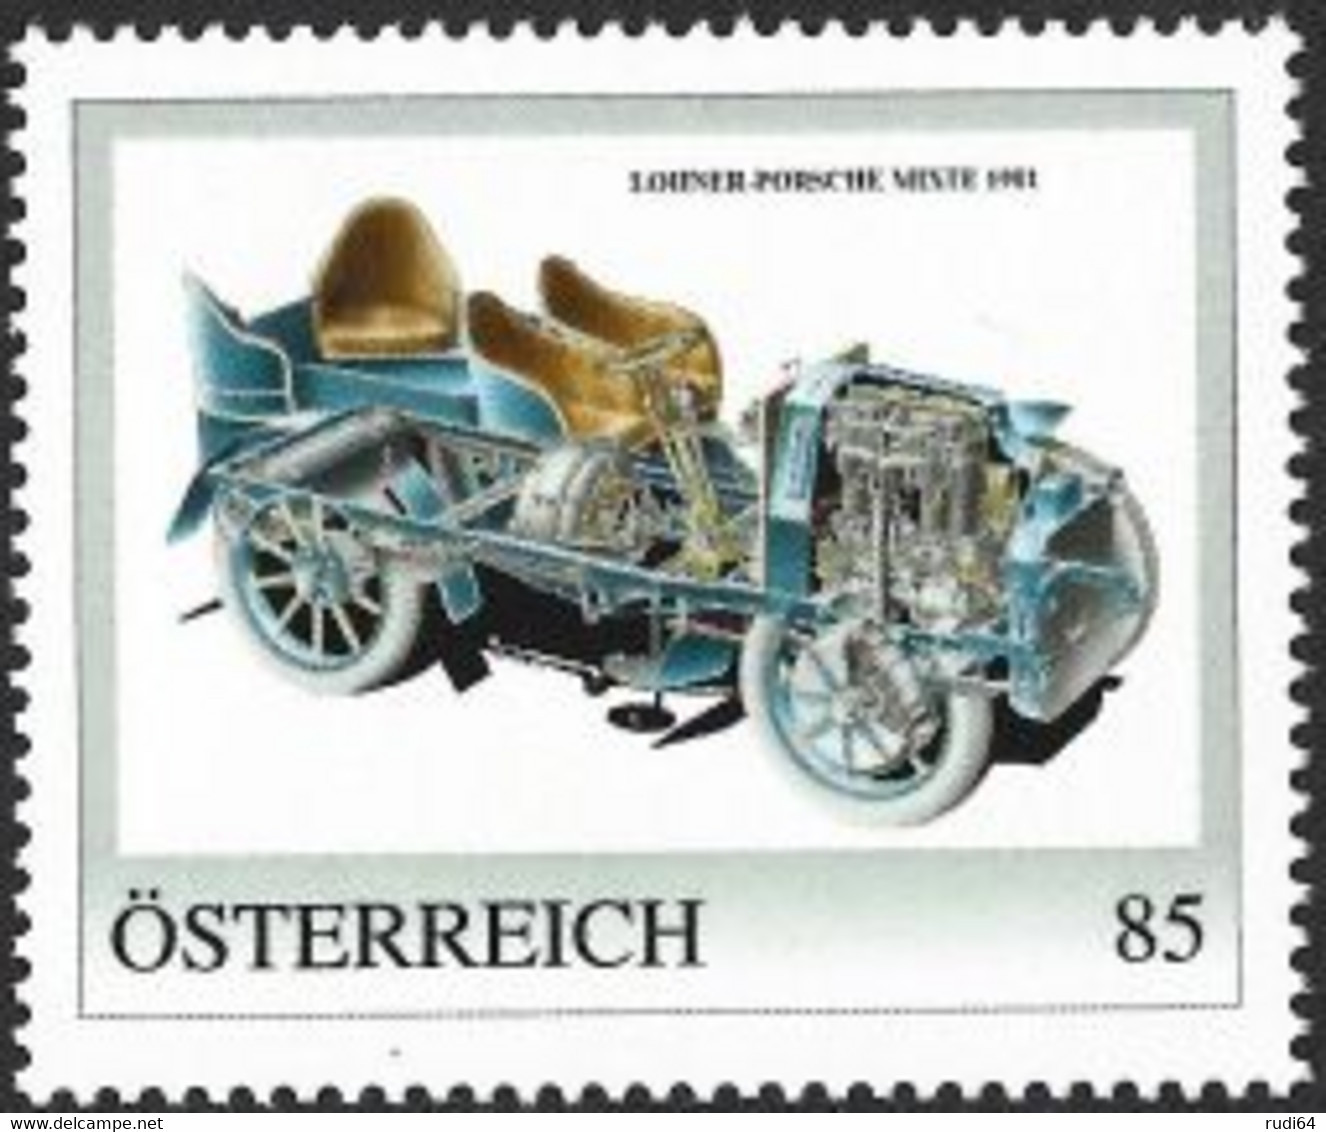 2022 Lohner-Porsche Mixte 1901, Personalisierte Briefmarke 2022, Konstruktion Von Ferdinand Porsche, 85 Cent, Automobile - Ungebraucht